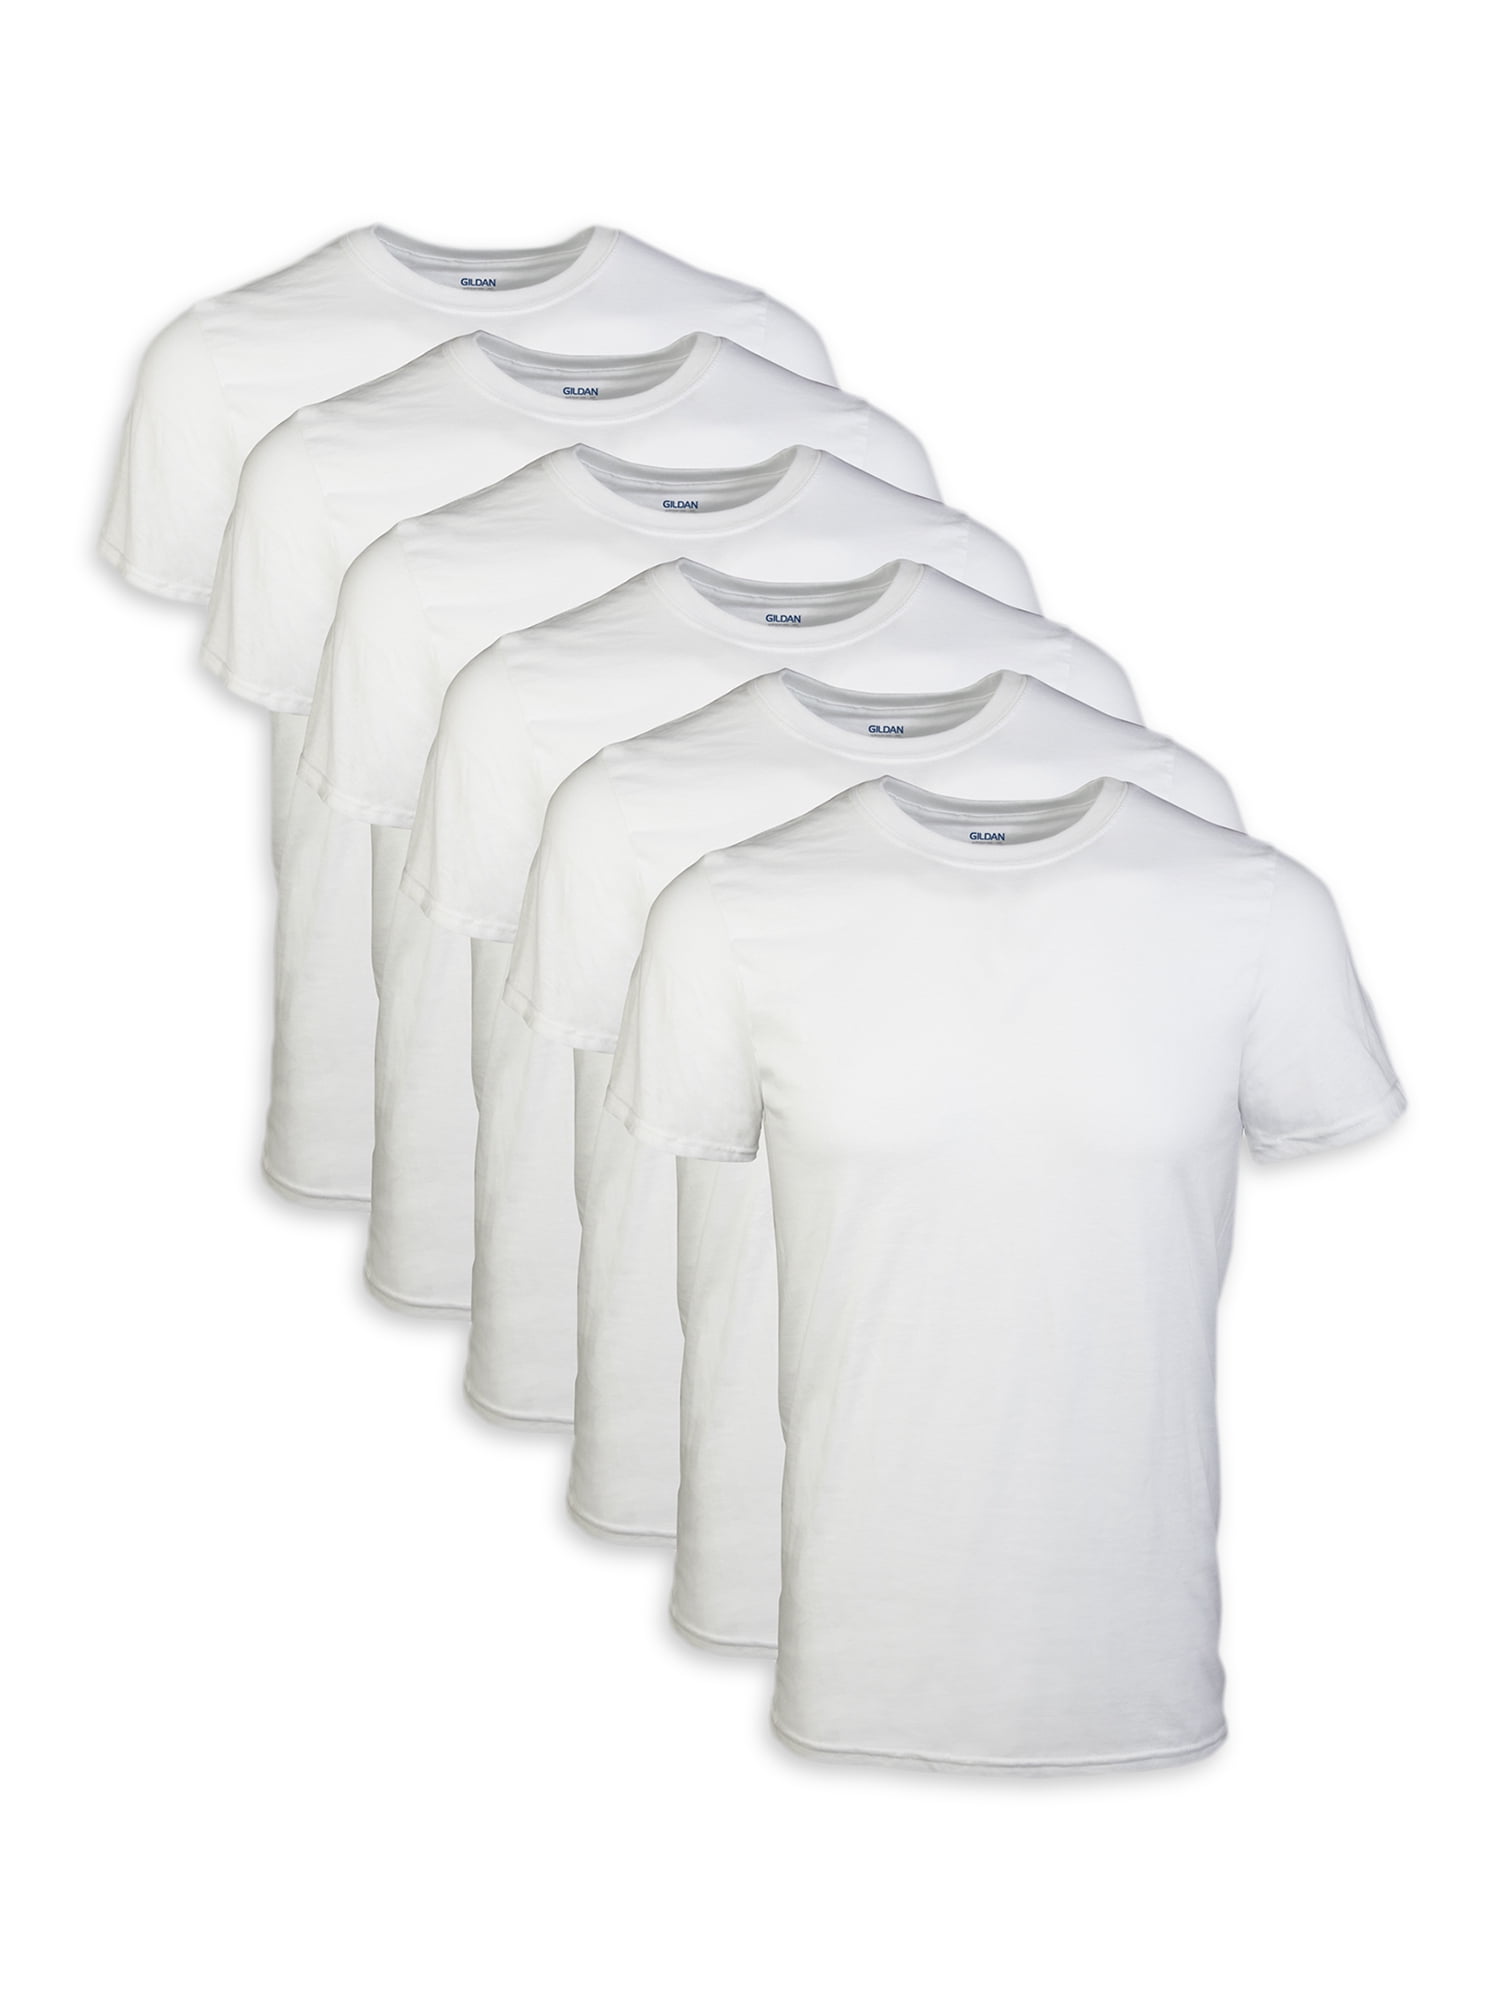 Gildan Adult Men's Short Sleeve Crew White T-Shirt, 6-Pack, Sizes